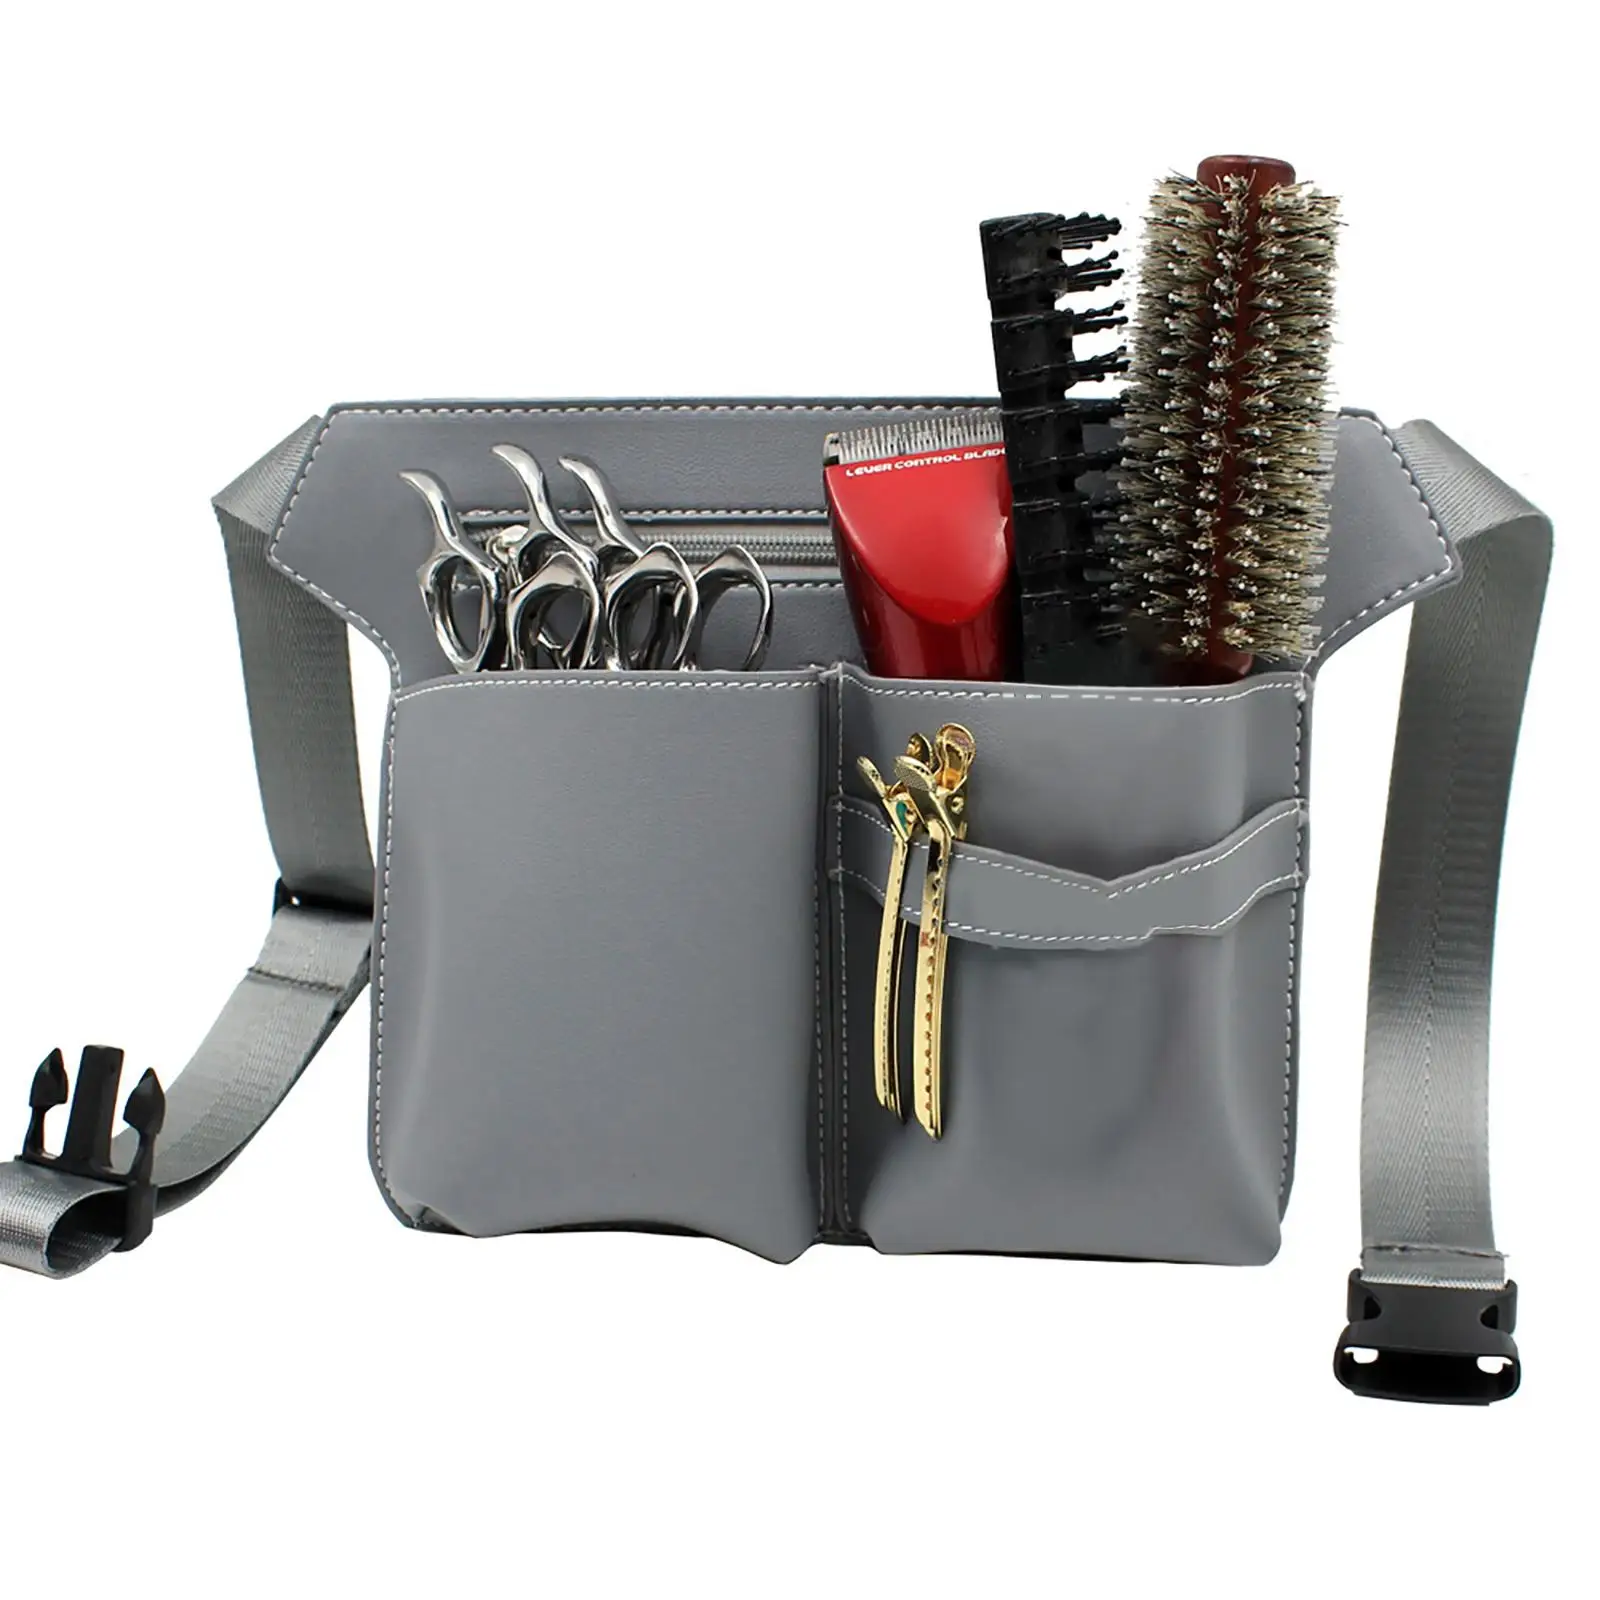 Scissors Pouch Waist Pouch Lightweight Barber Tools for Hair Stylist Shop Hair Scissors Clips Combs Waist Bag Holster Case